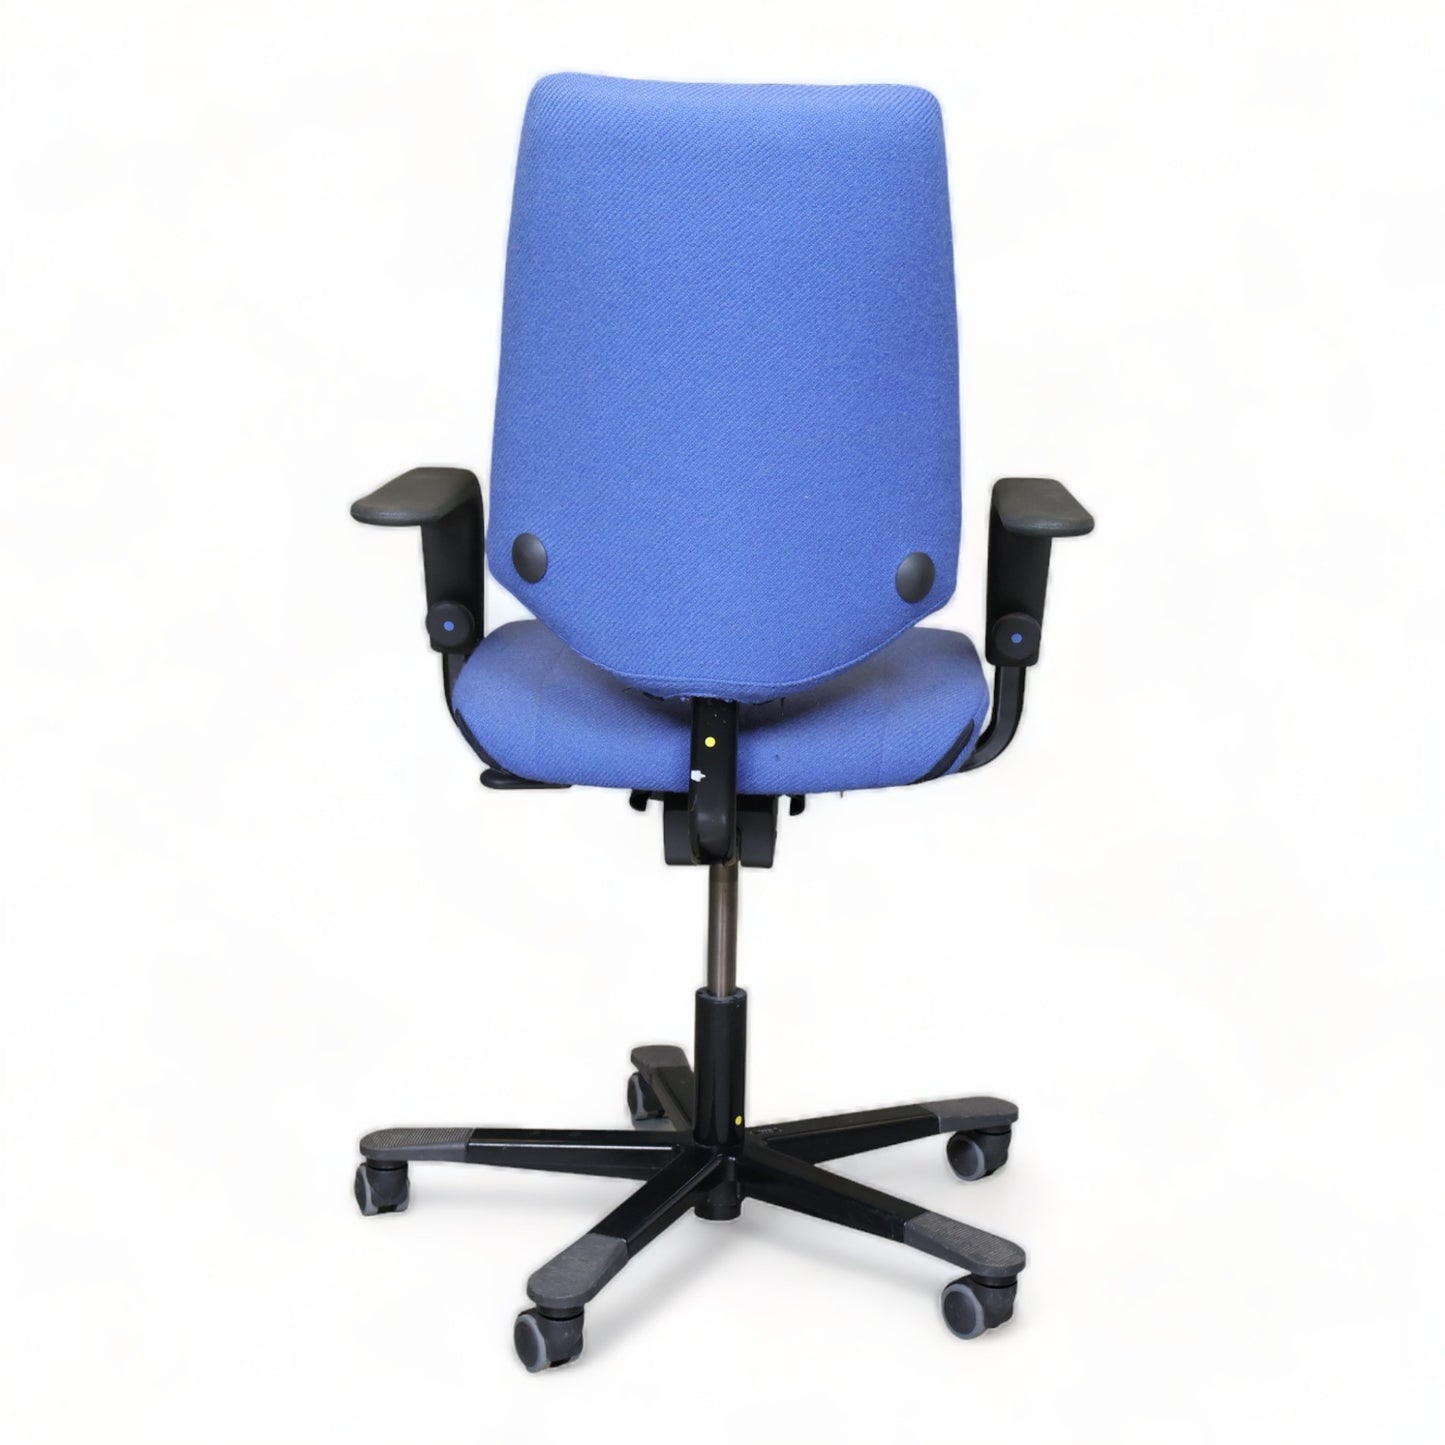 Nyrenset | Håg Credo kontorstol i fargen blå